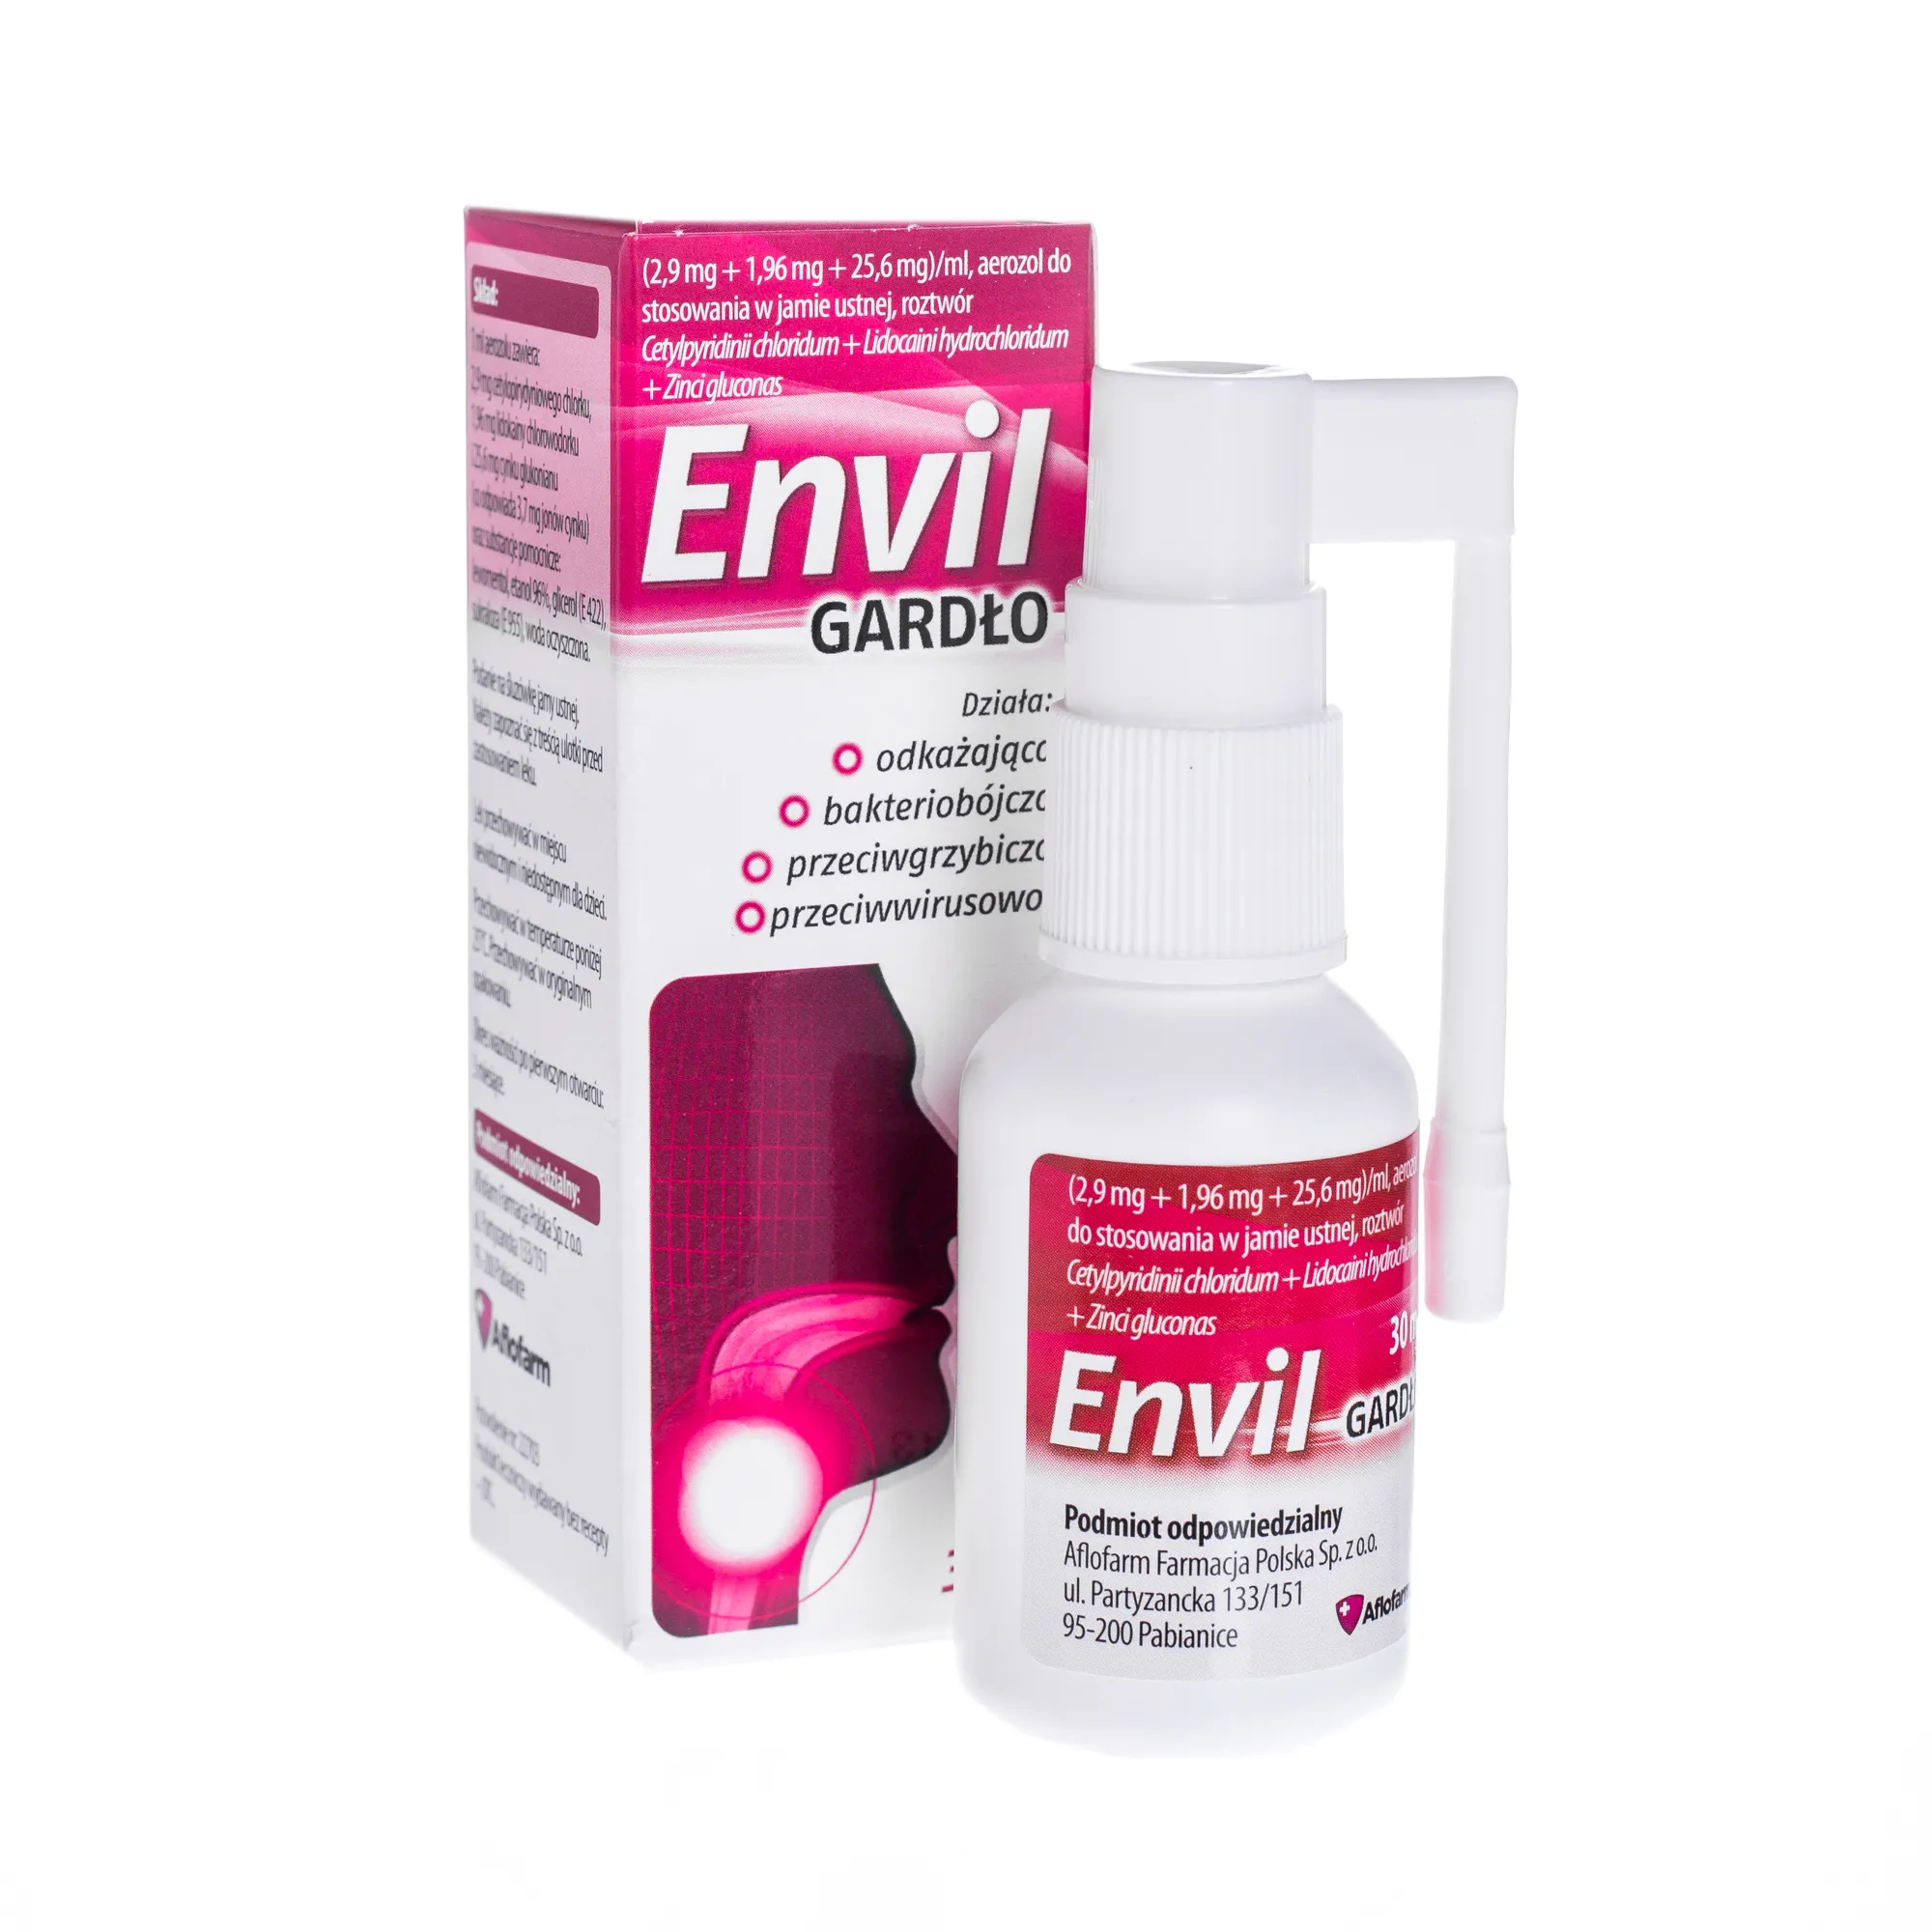 Envil Gardło (2,9 mg + 1,96 mg + 25,6 mg)/ml, aerozol do stosowania w jamie ustnej, roztwór, 30 ml